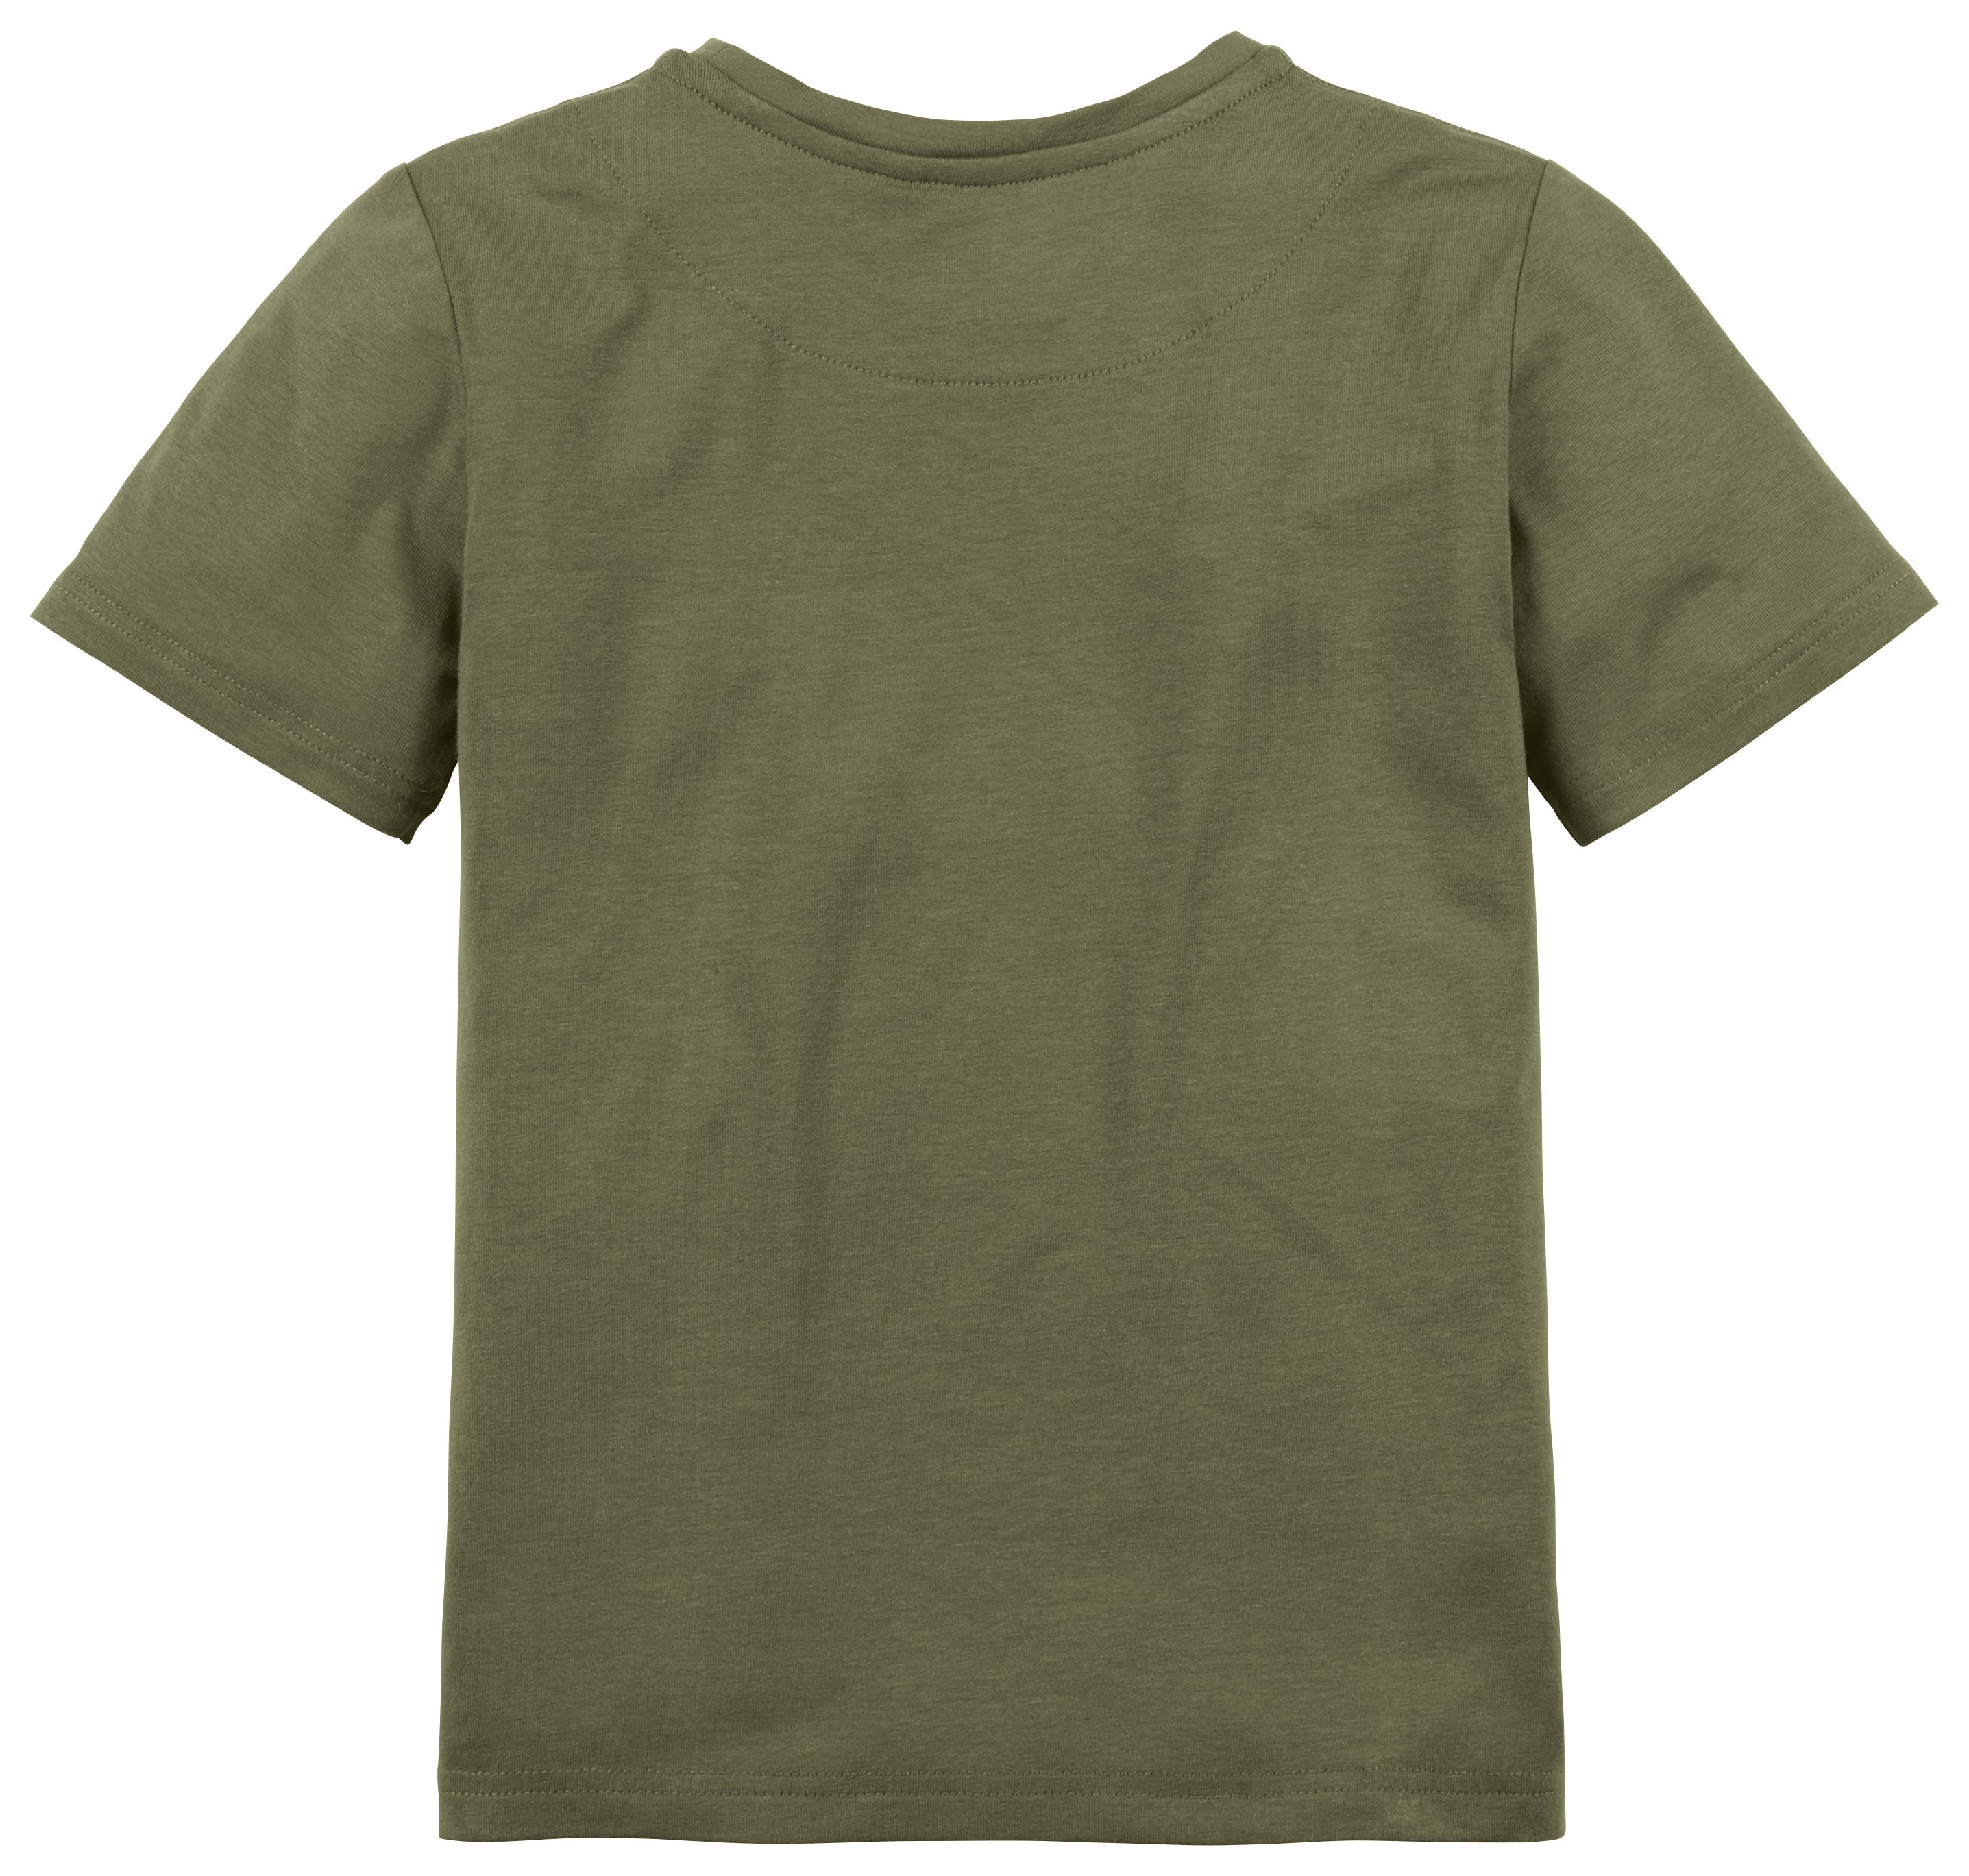 Die Rückseite des grünen Hudson-Shirts